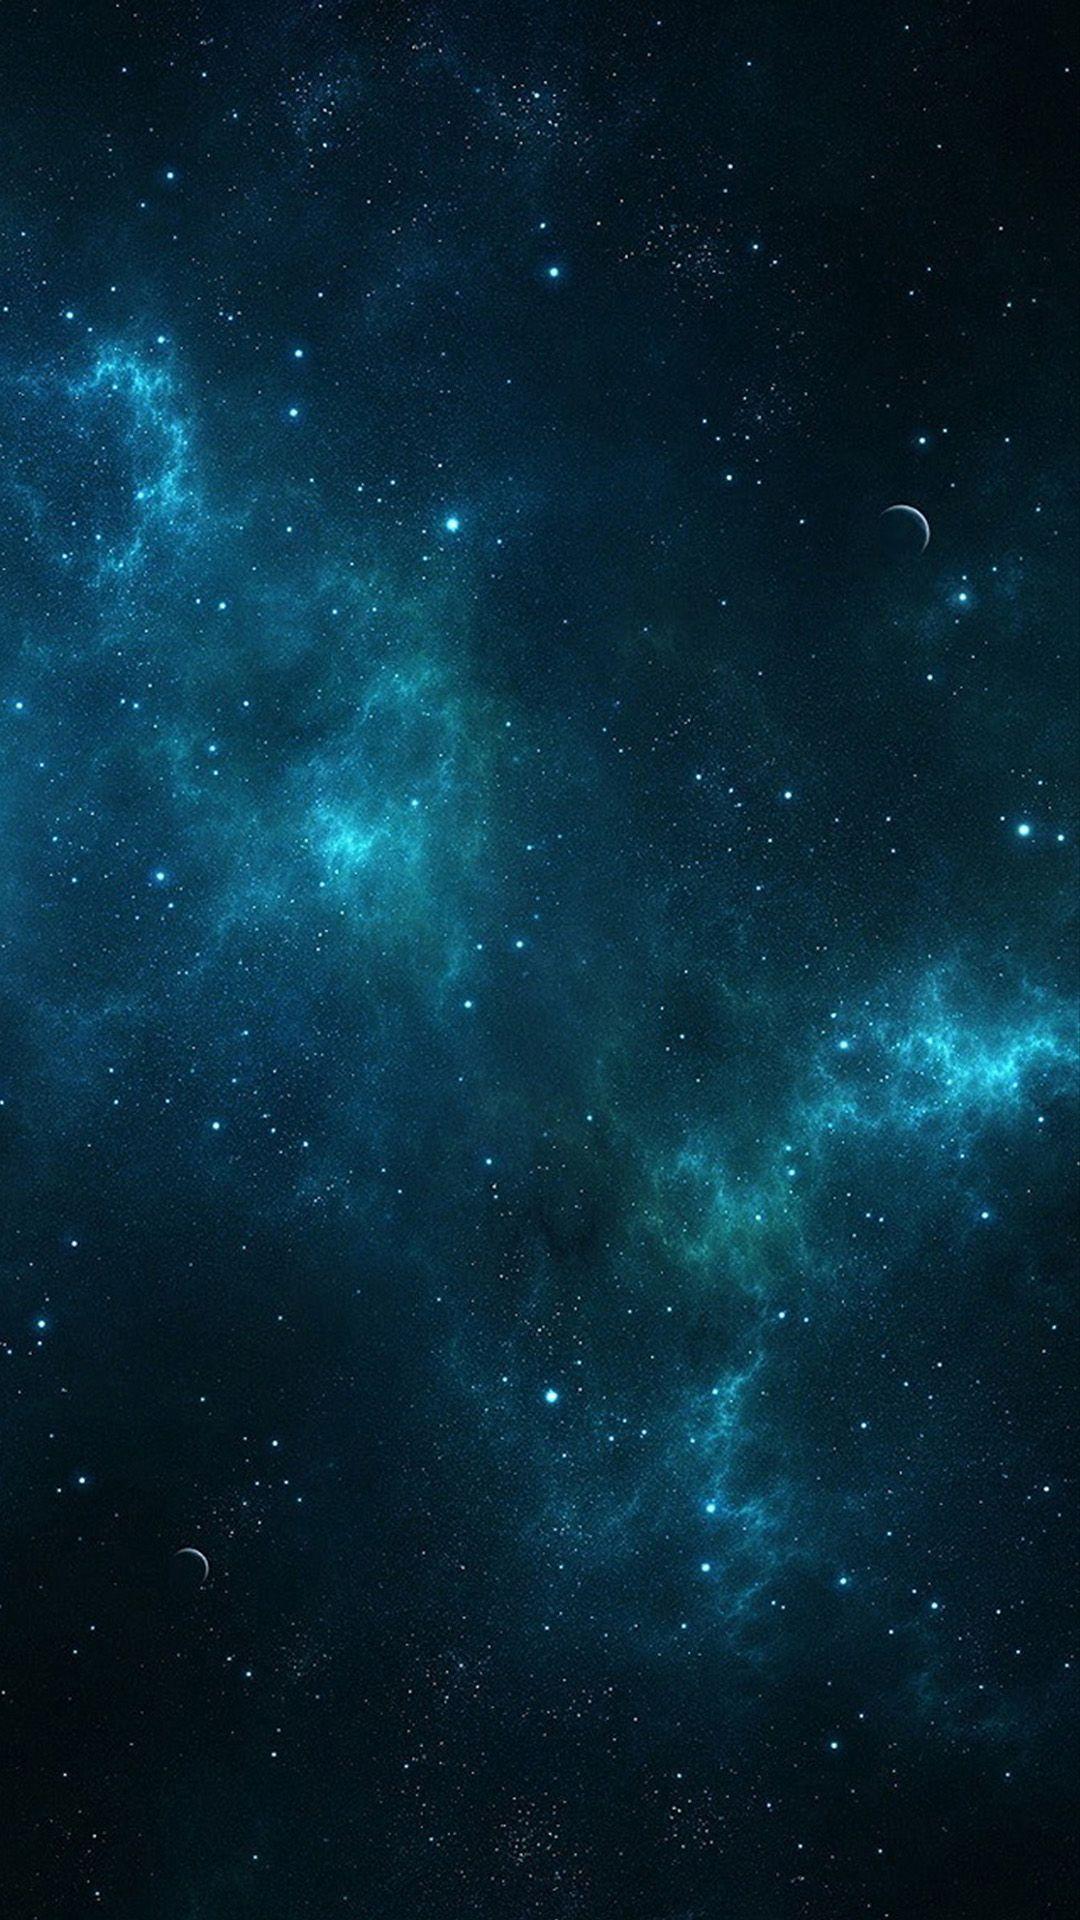 Nếu bạn đang tìm kiếm một hình nền với sắc xanh đặc trưng của vũ trụ, hãy tìm kiếm những hình nền iPhone Galaxy màu xanh. Với những tông màu đặc trưng của thiên nhiên và vẻ đẹp kỳ diệu của vũ trụ, các hình nền màu xanh này sẽ khiến bạn cảm thấy thật sự say mê.